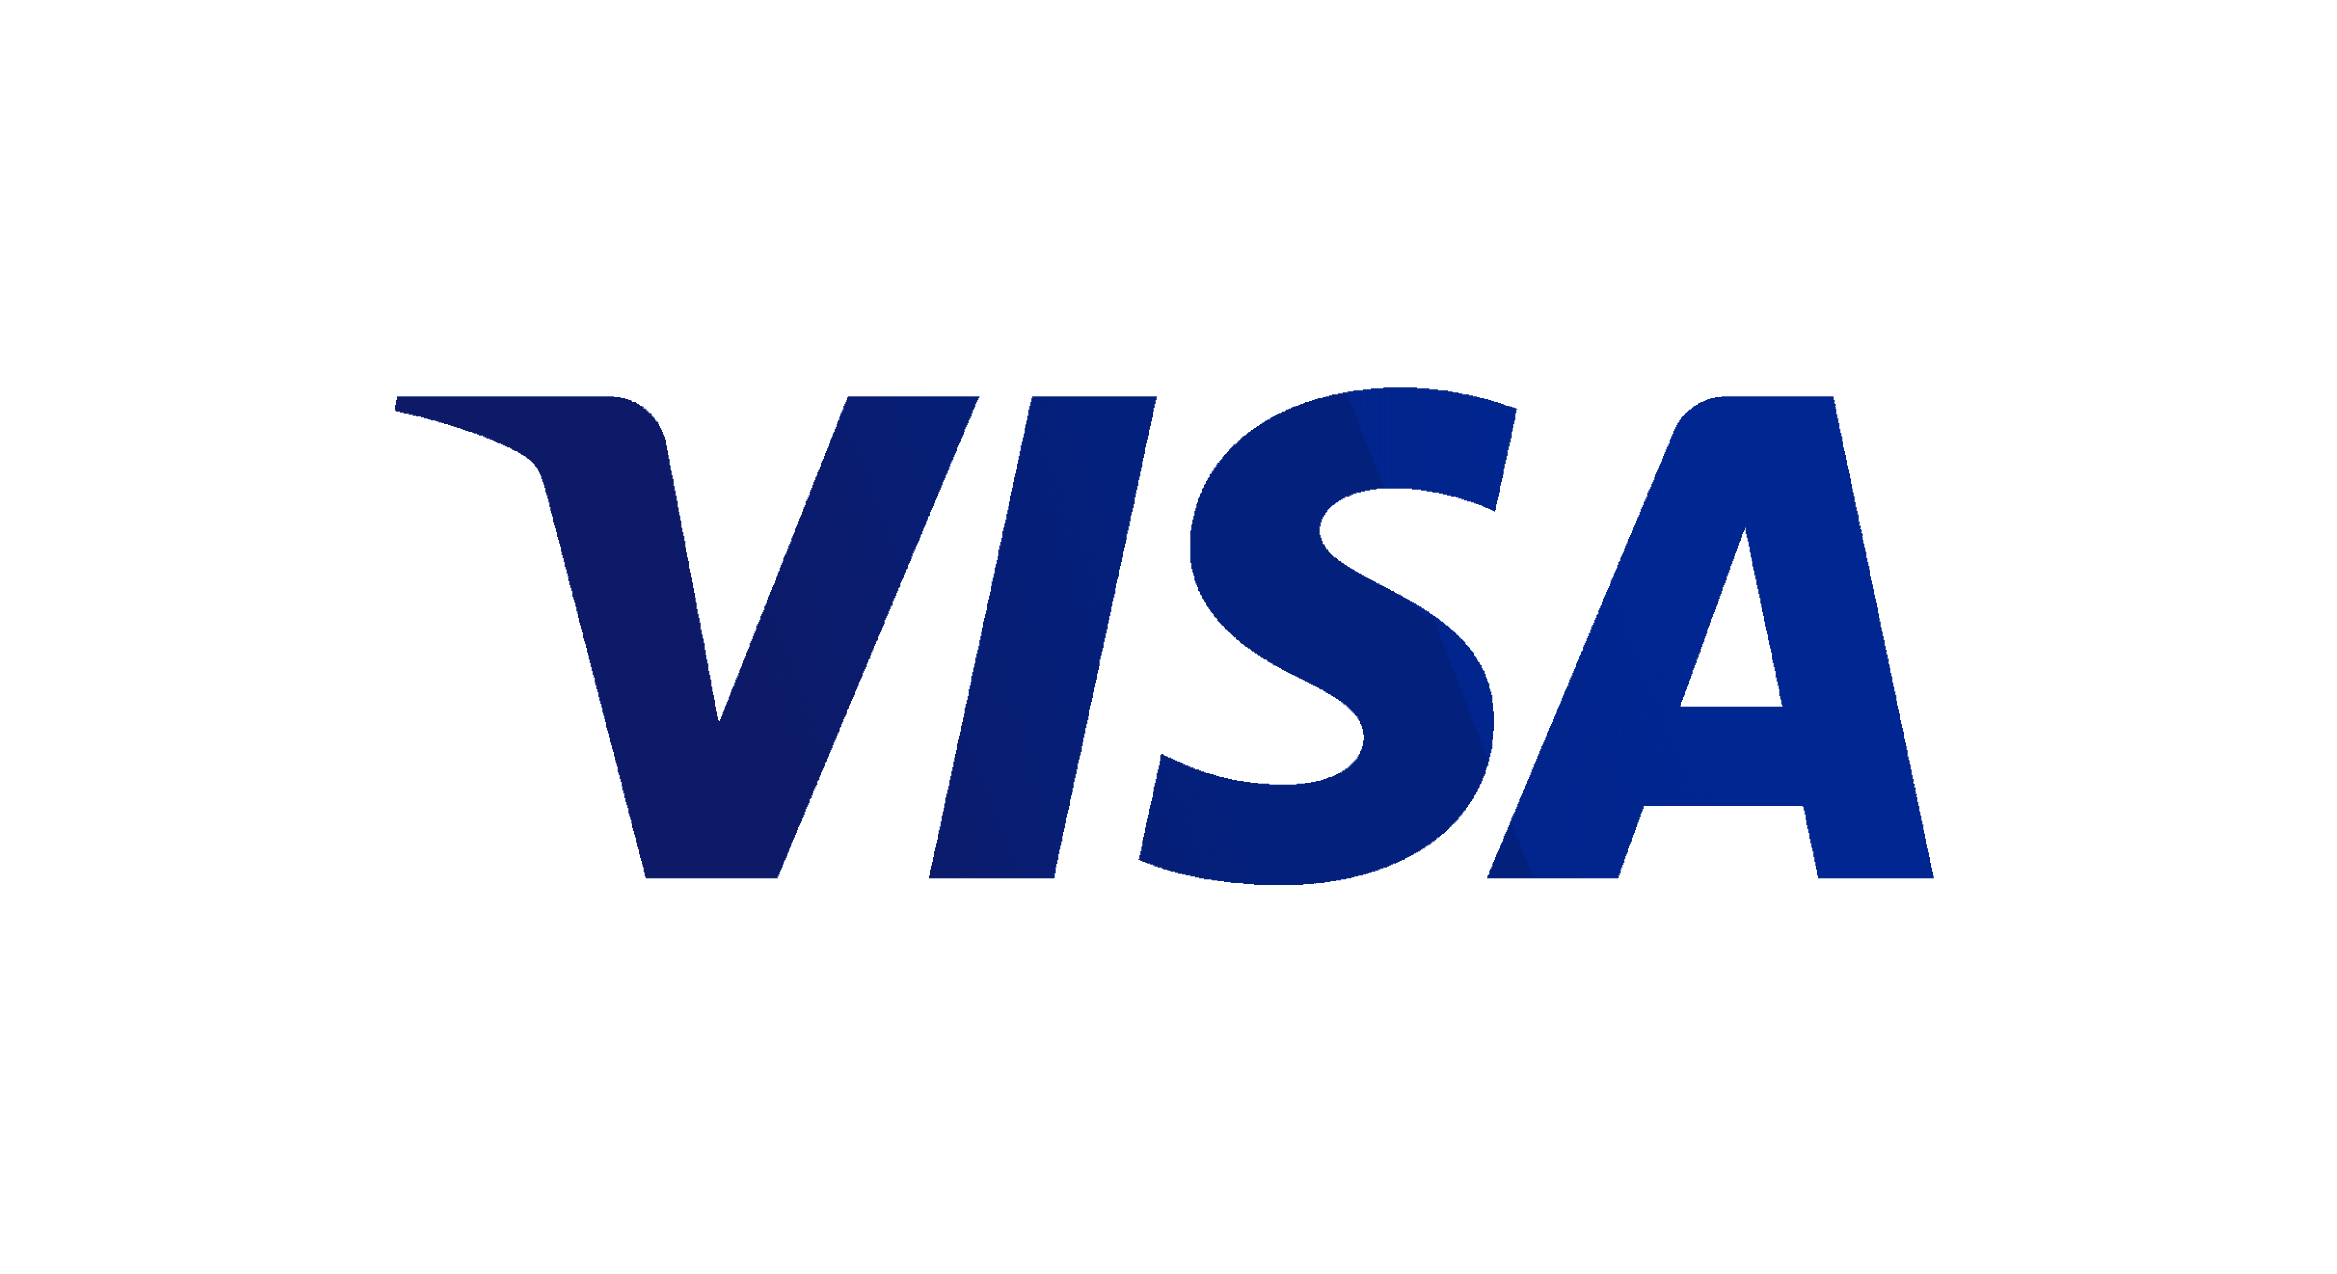 logo for visa 